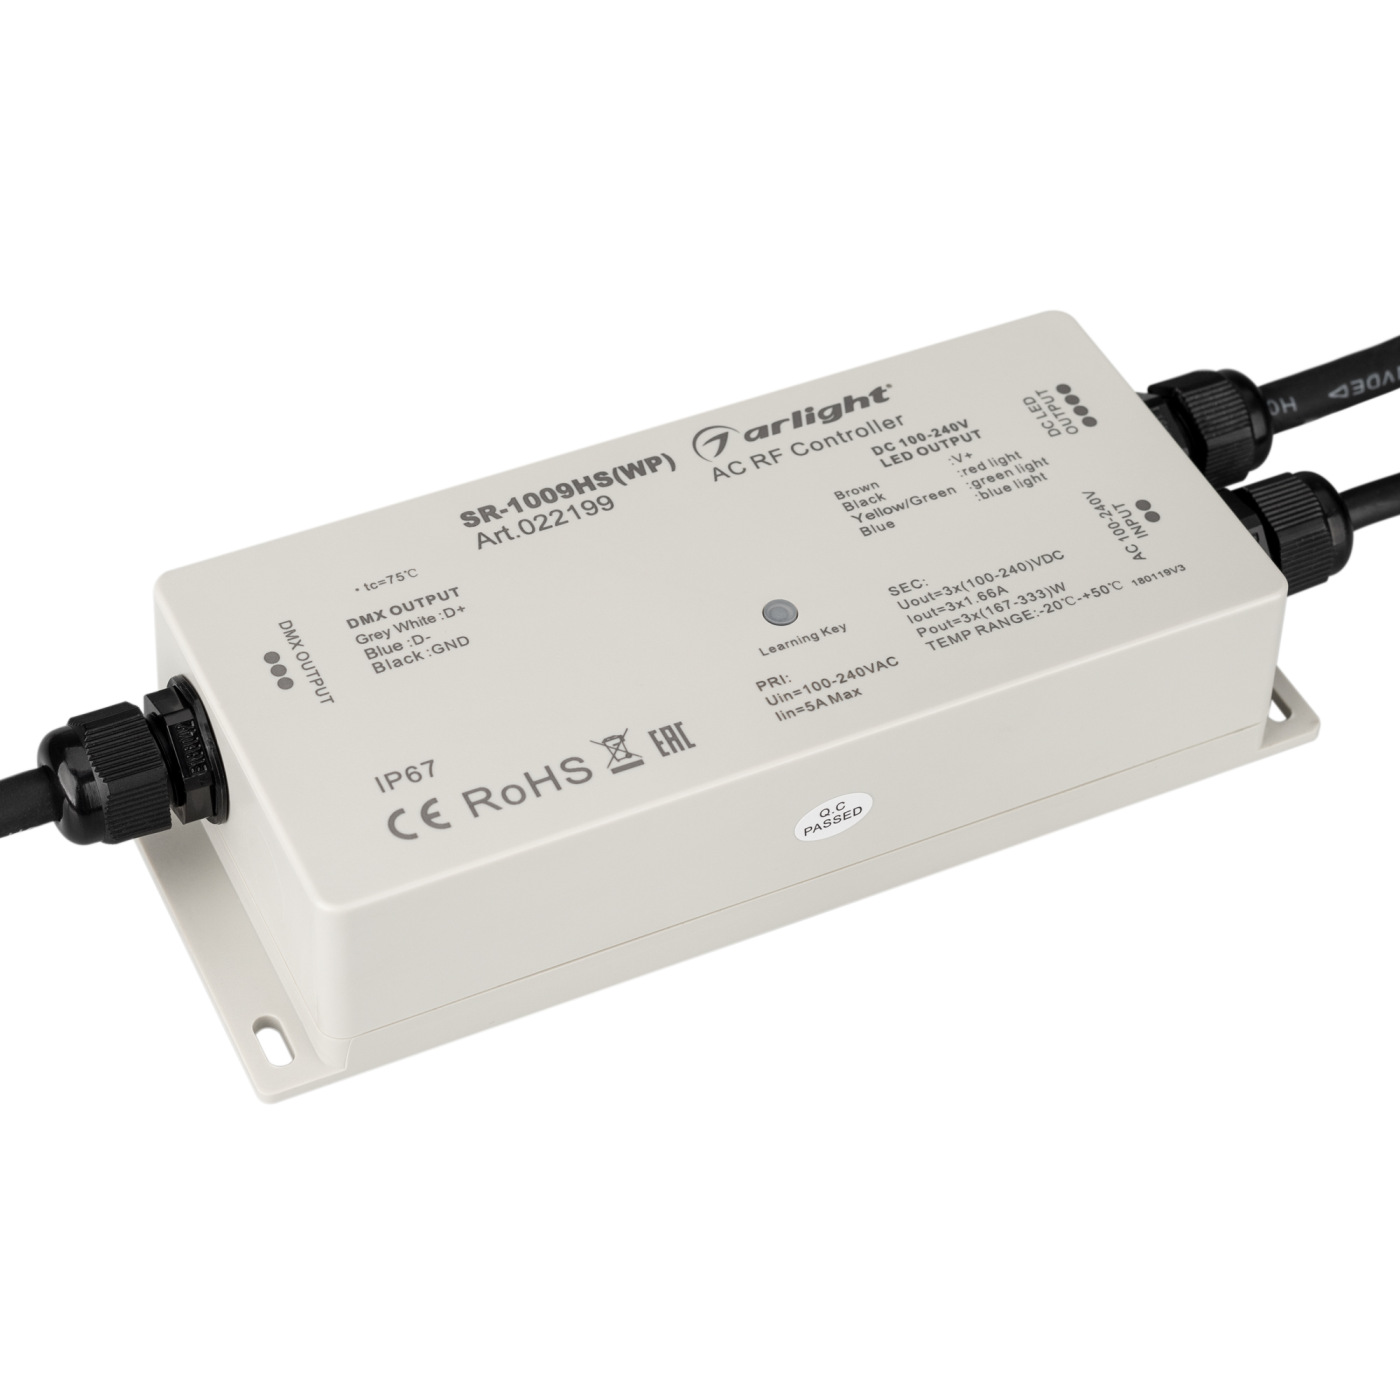 Контроллер SR-1009HSWP (230V, 3x1.66A) (Arlight, IP67 Пластик, 3 года) контроллер hx 801sb 2048 pix 5 24v sd card arlight